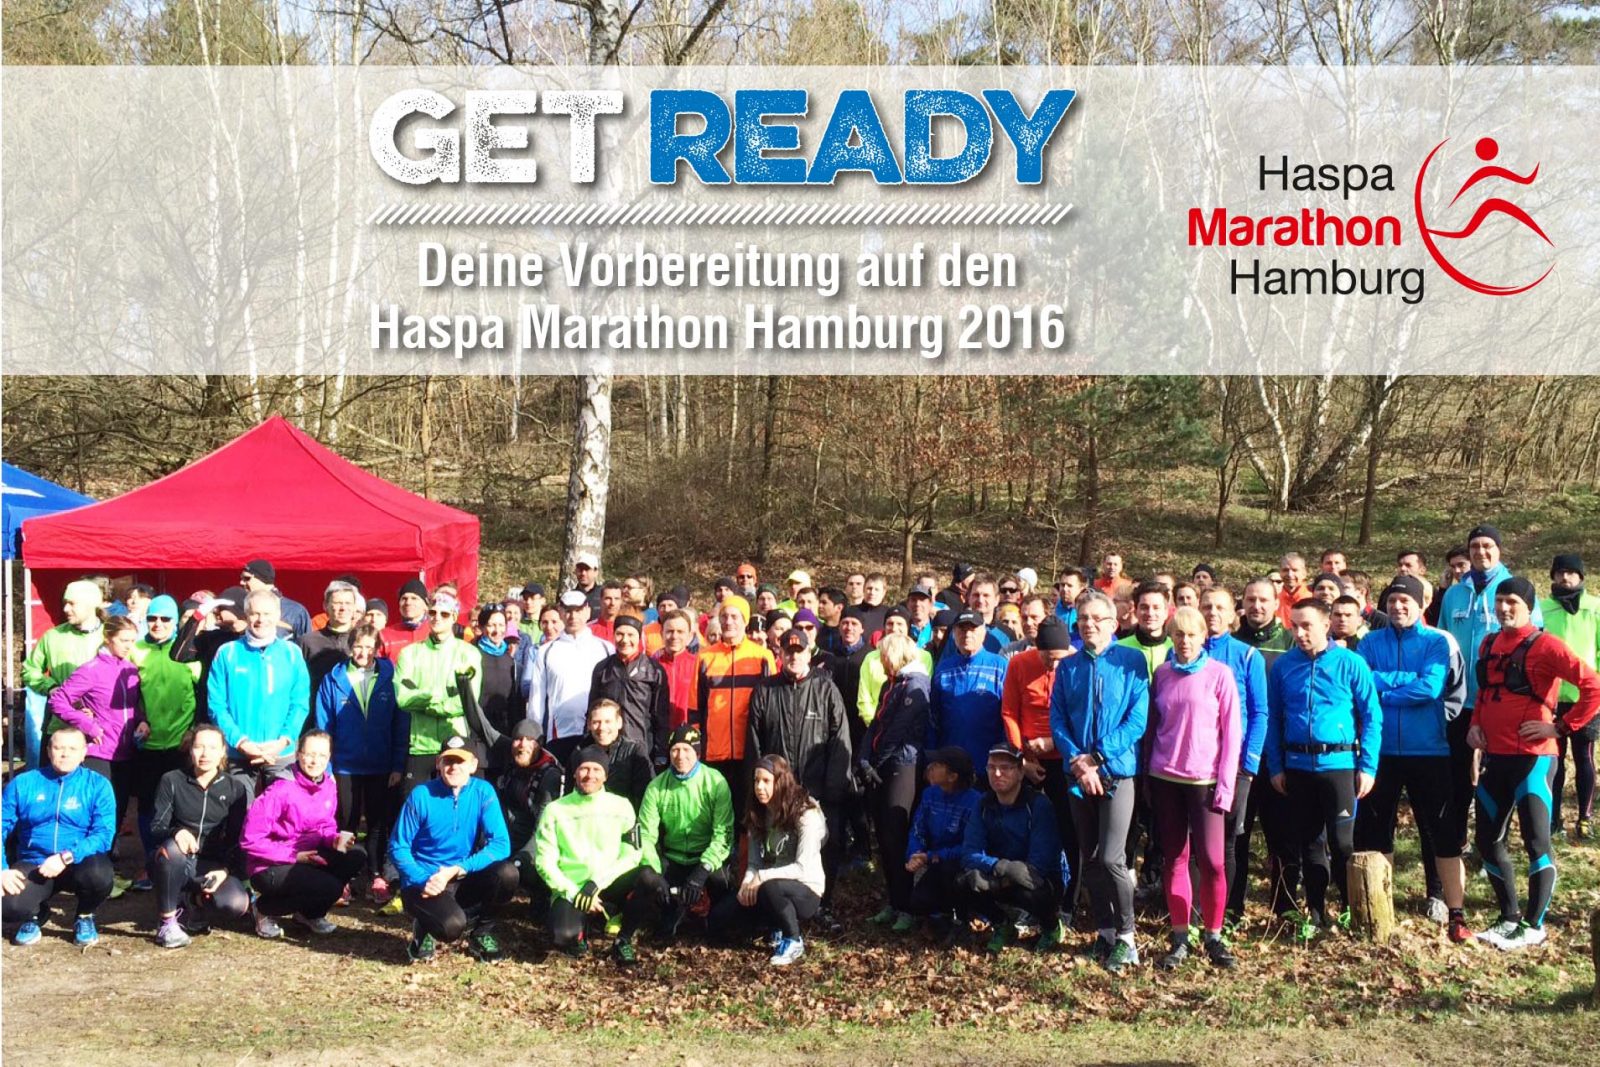 Get Ready – Deine Vorbereitung auf den Haspa Marathon Hamburg 2016